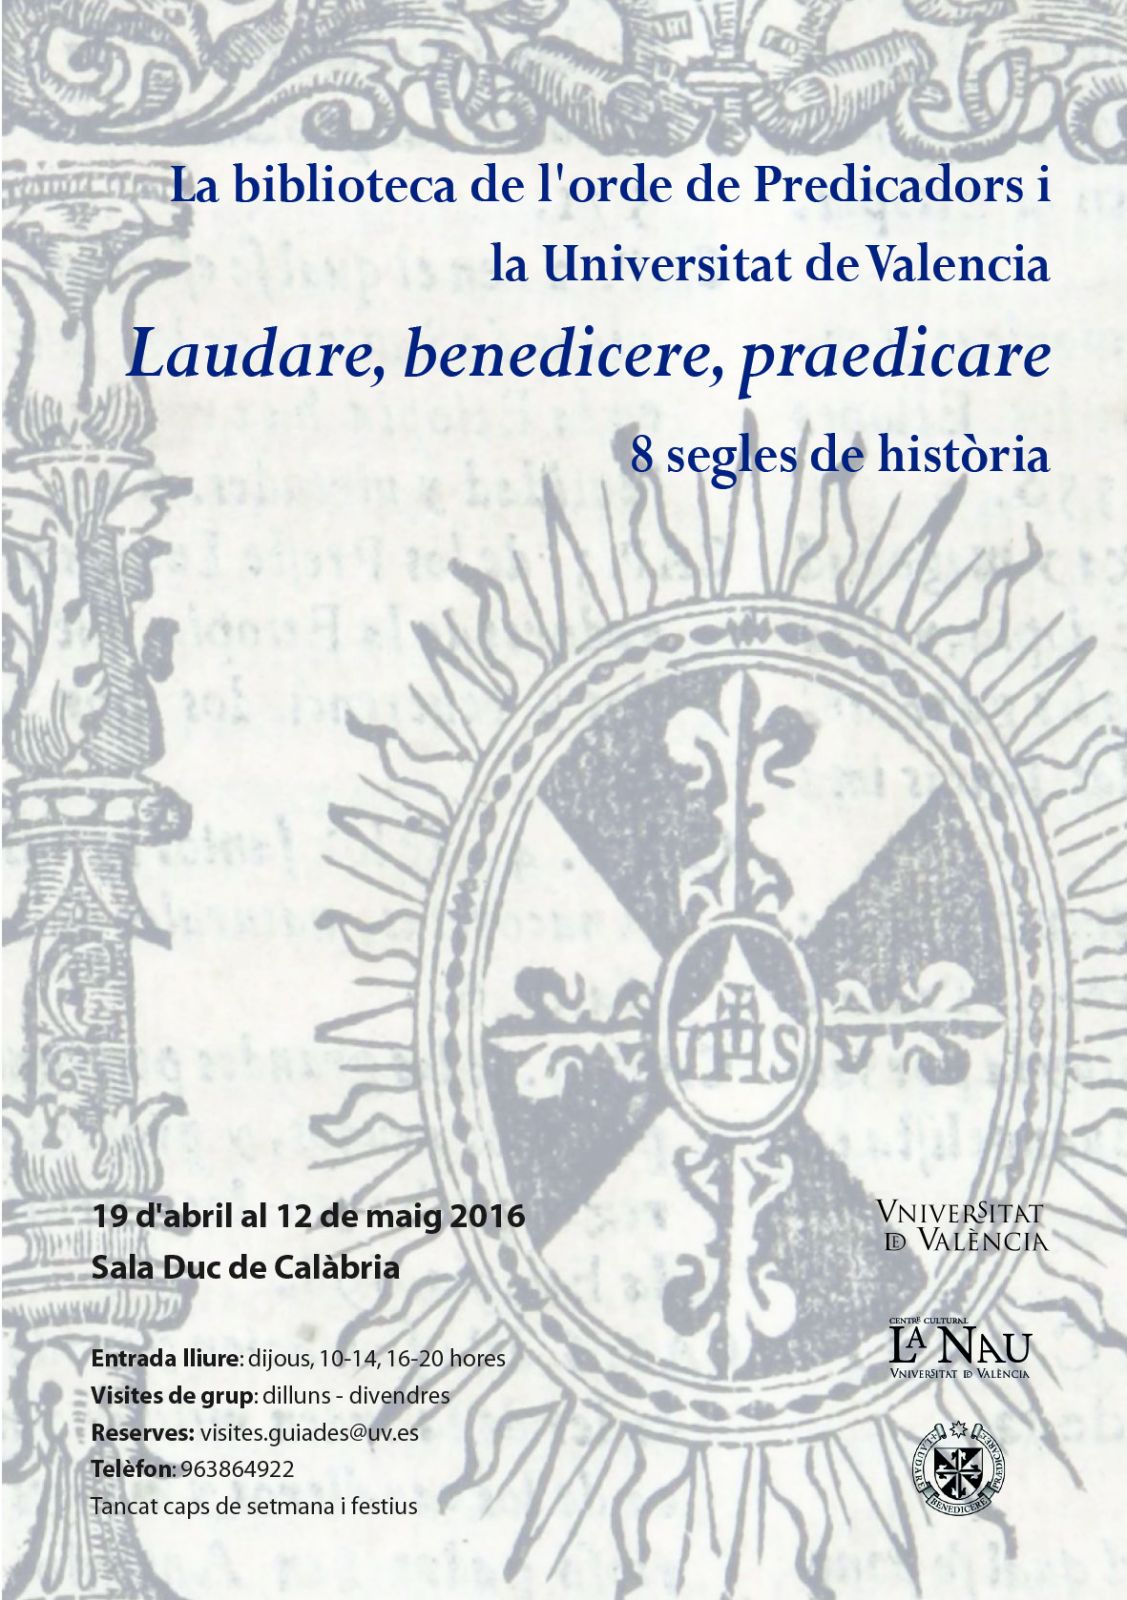 La biblioteca de la Orden de Predicadores y la Universitat de València. Exposición con motivo del Jubileo